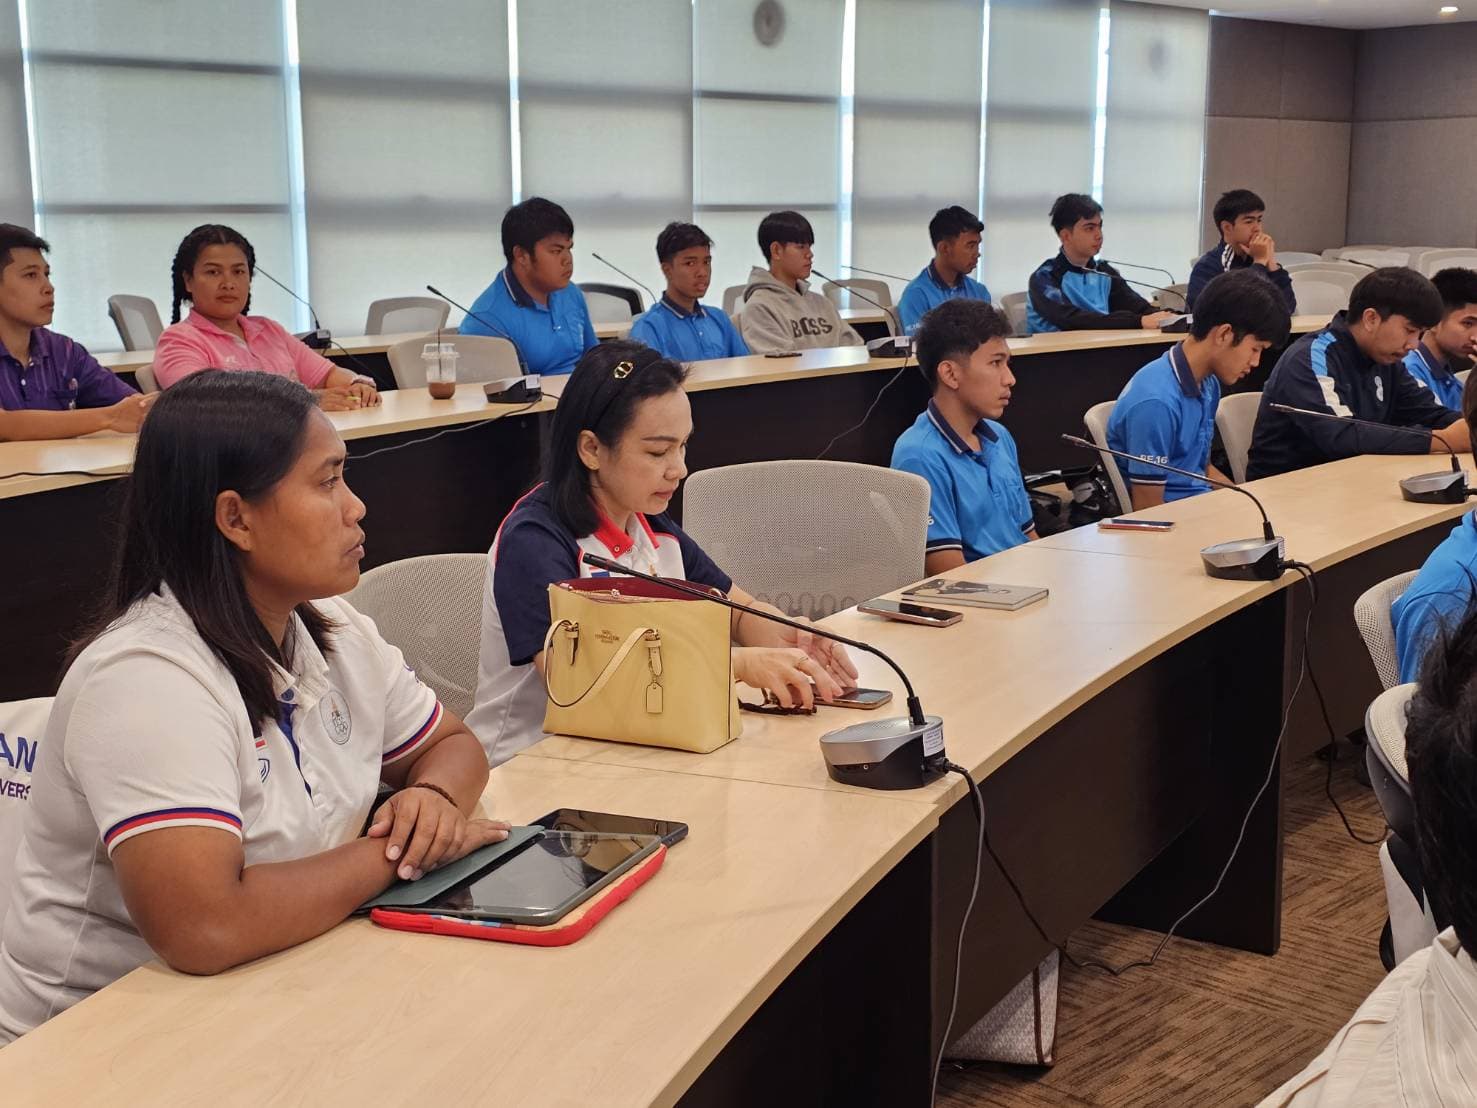 ผอ.ศูนย์ส่งเสริมวัฒนธรรมฯ เข้าร่วมการประชุมจับฉลากแบ่งสายรอบคัดเลือกเขตภาคใต้ การแข่งขันกีฬามหาวิทยาลัยแห่งประเทศไทย ครั้งที่ 49